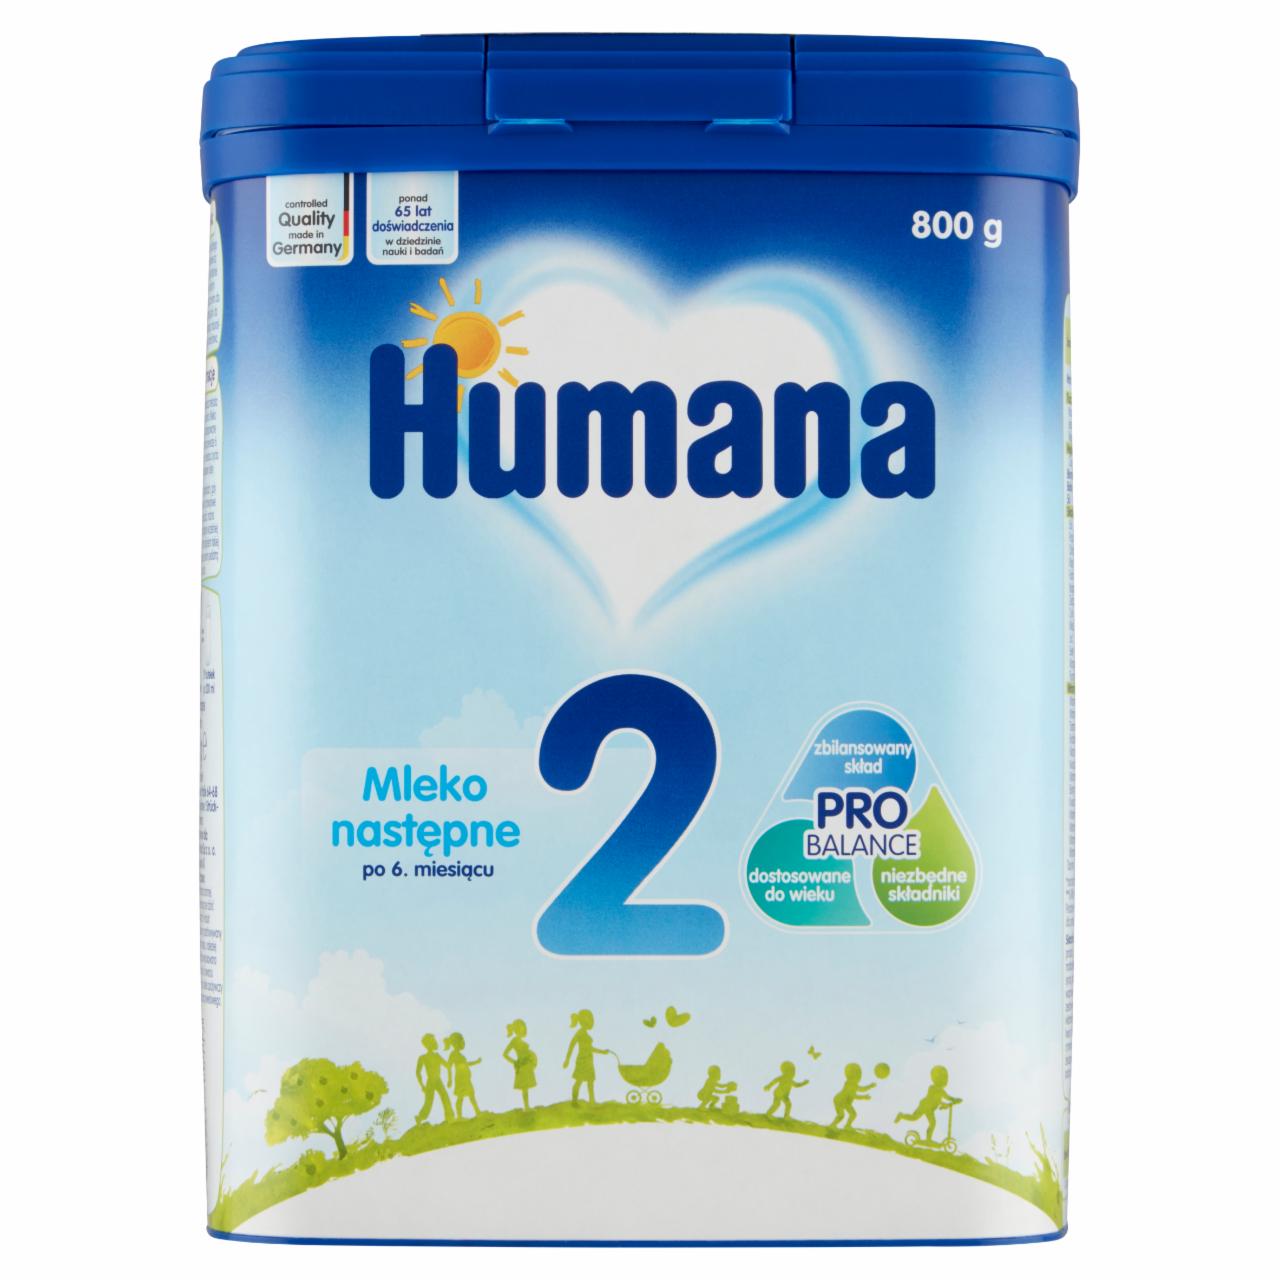 Zdjęcia - Humana 2 Mleko następne po 6. miesiącu 800 g